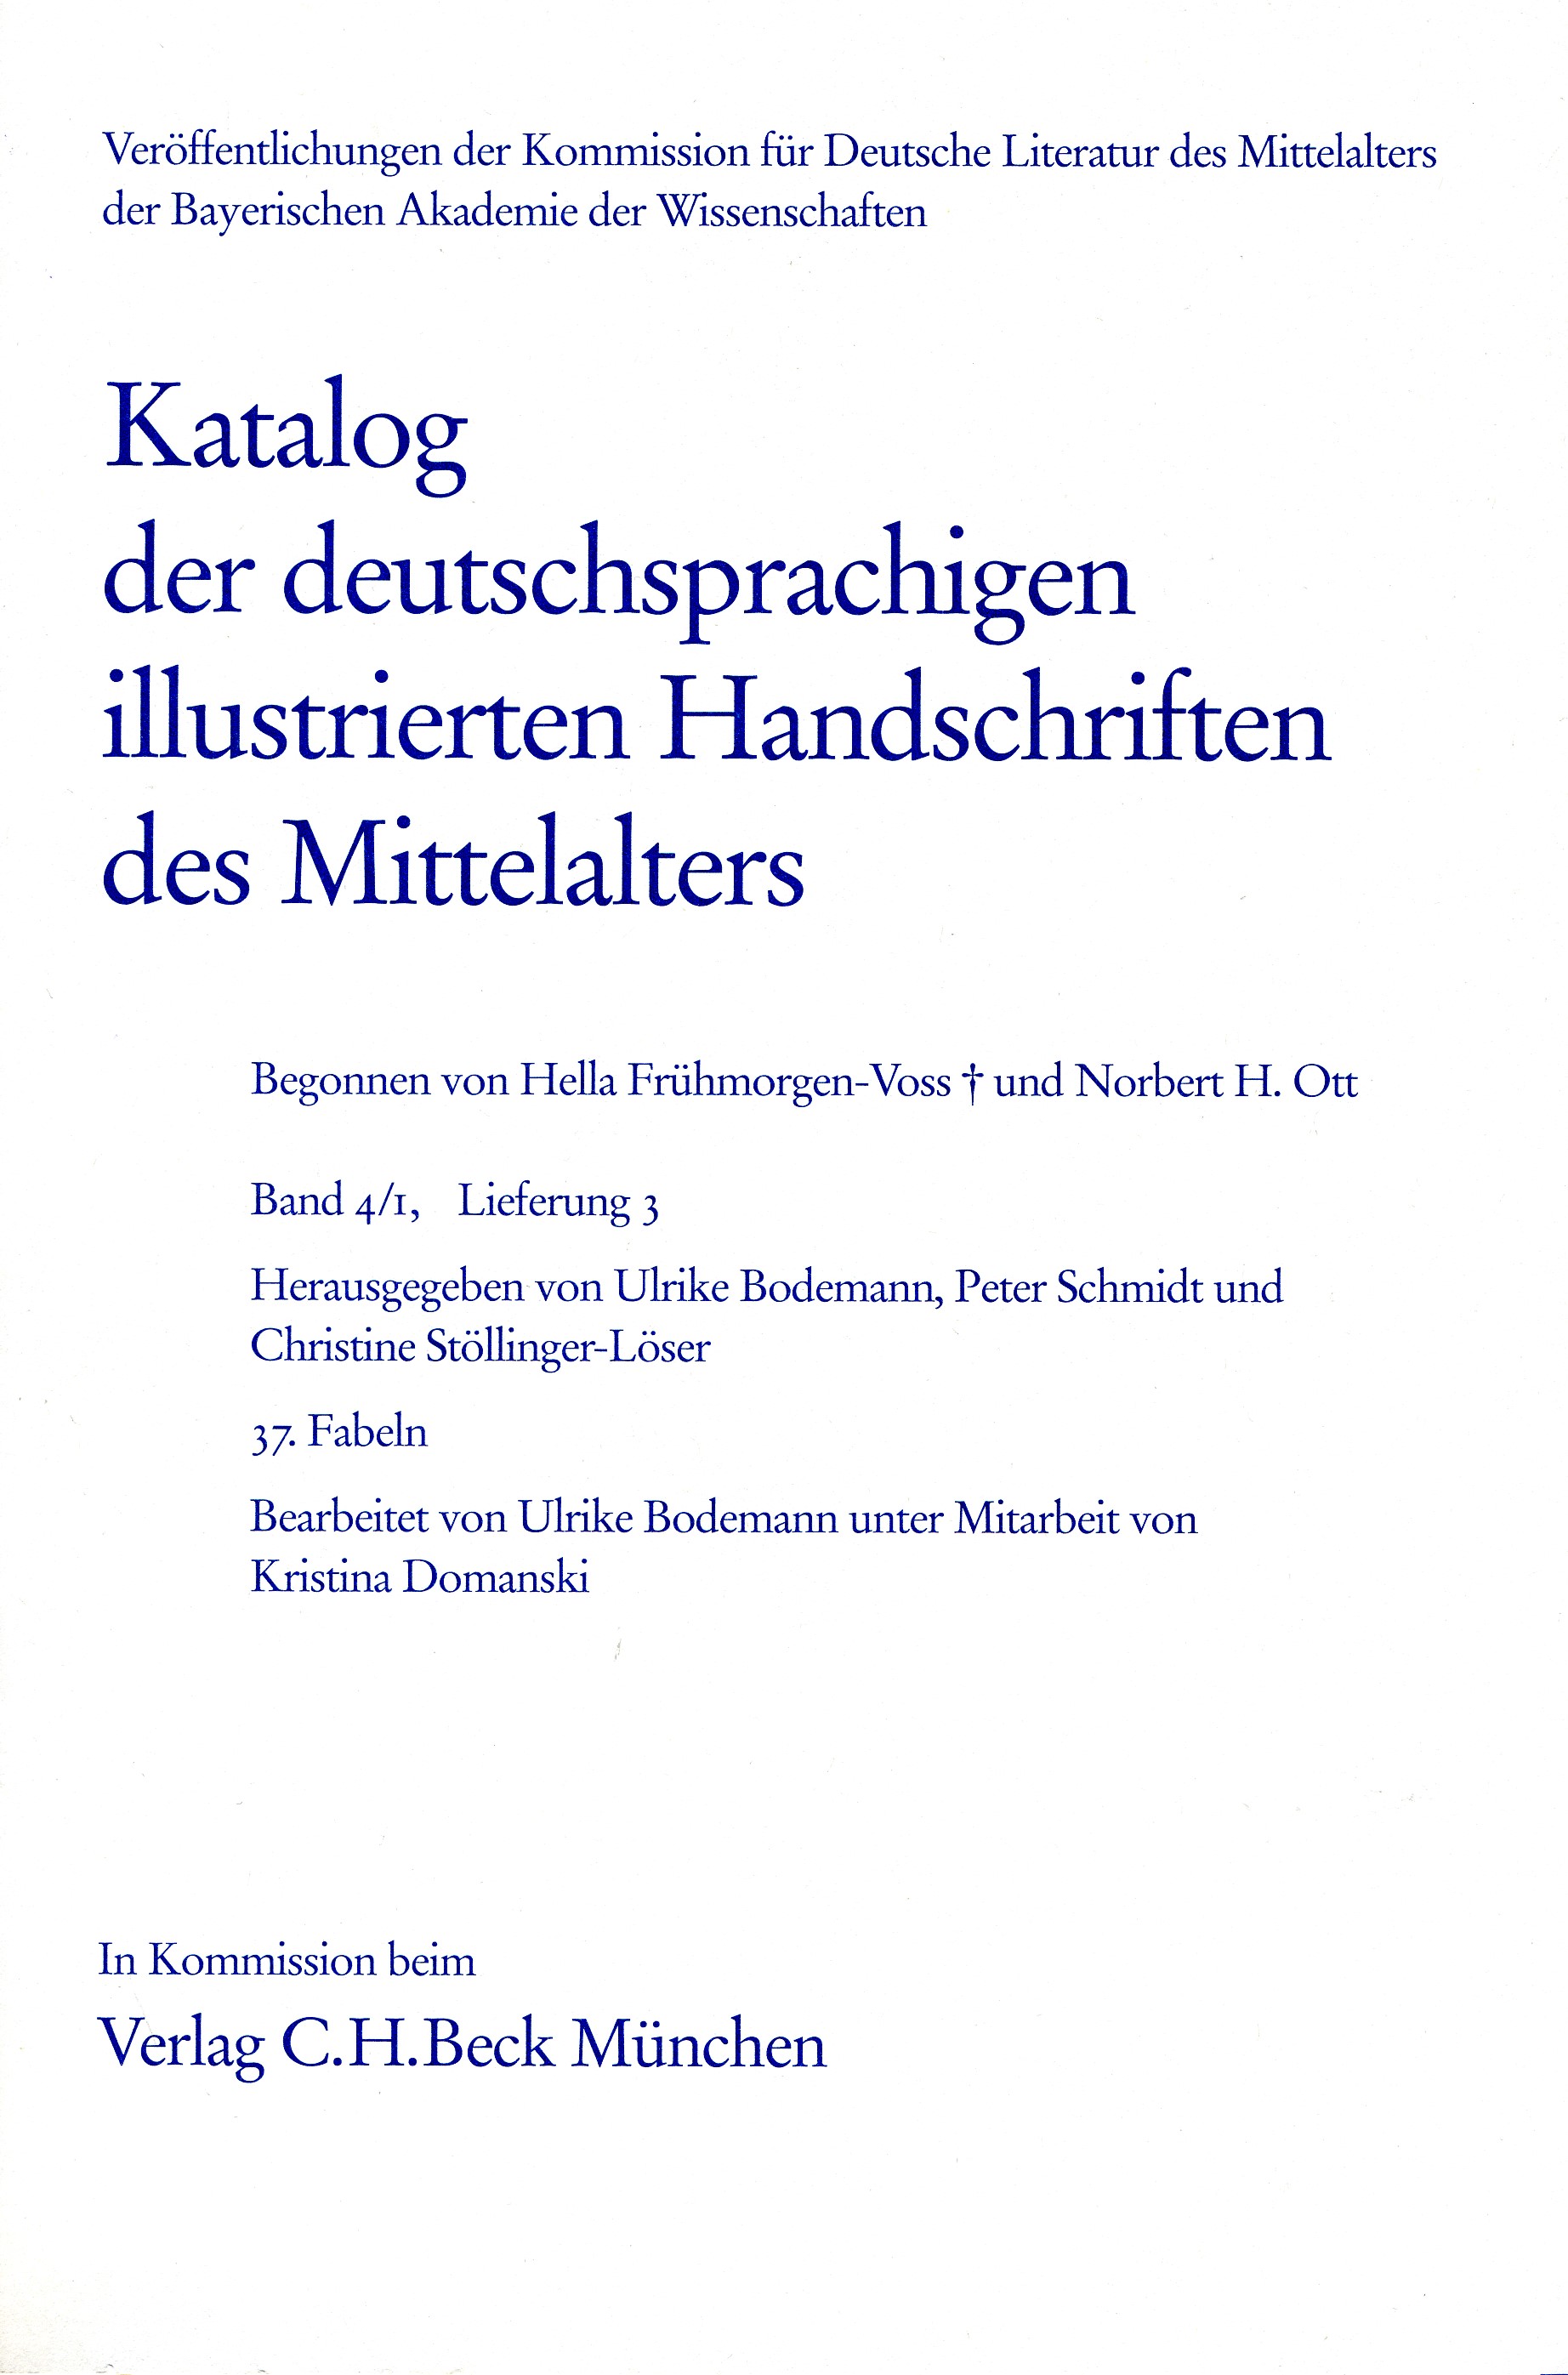 Cover: Bodemann, Ulrike /  Freienhagen-Baumgardt, Kristina / Schmidt, Peter 
, Katalog der deutschsprachigen illustrierten Handschriften des Mittelalters Band 4/1, Lfg.: 27-37